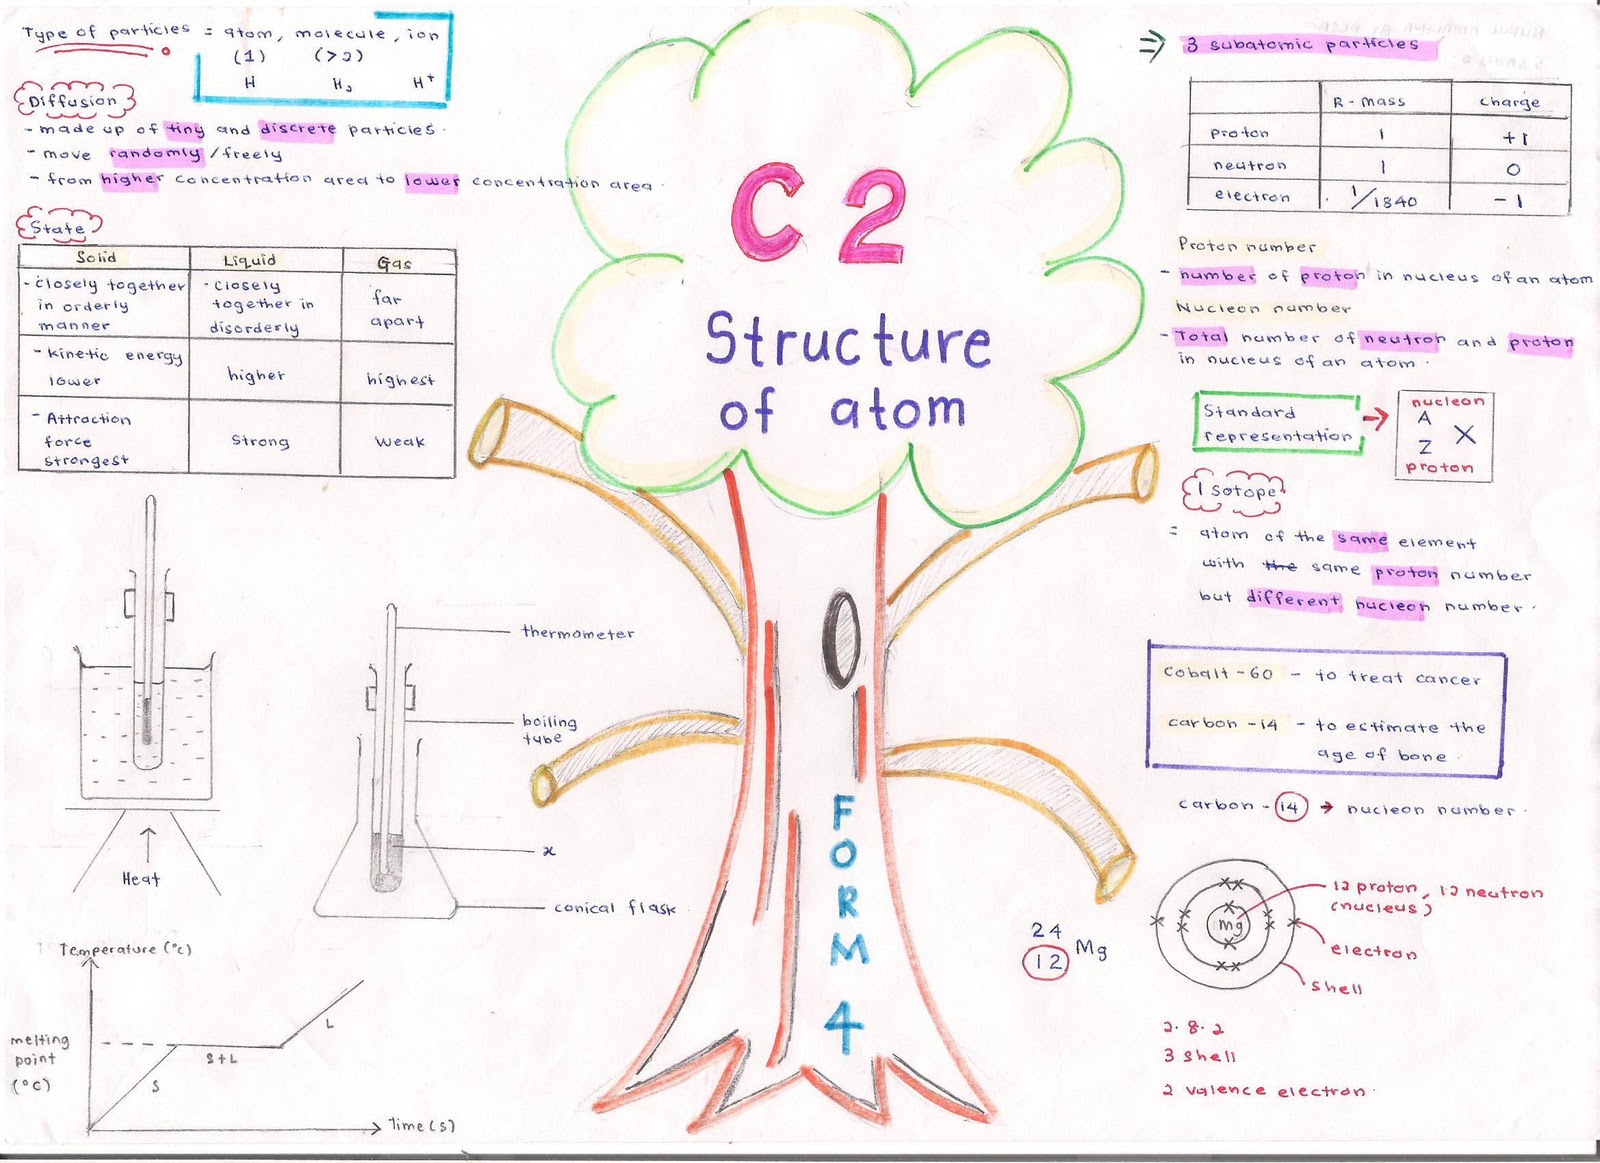 structure of atom F4C2+3